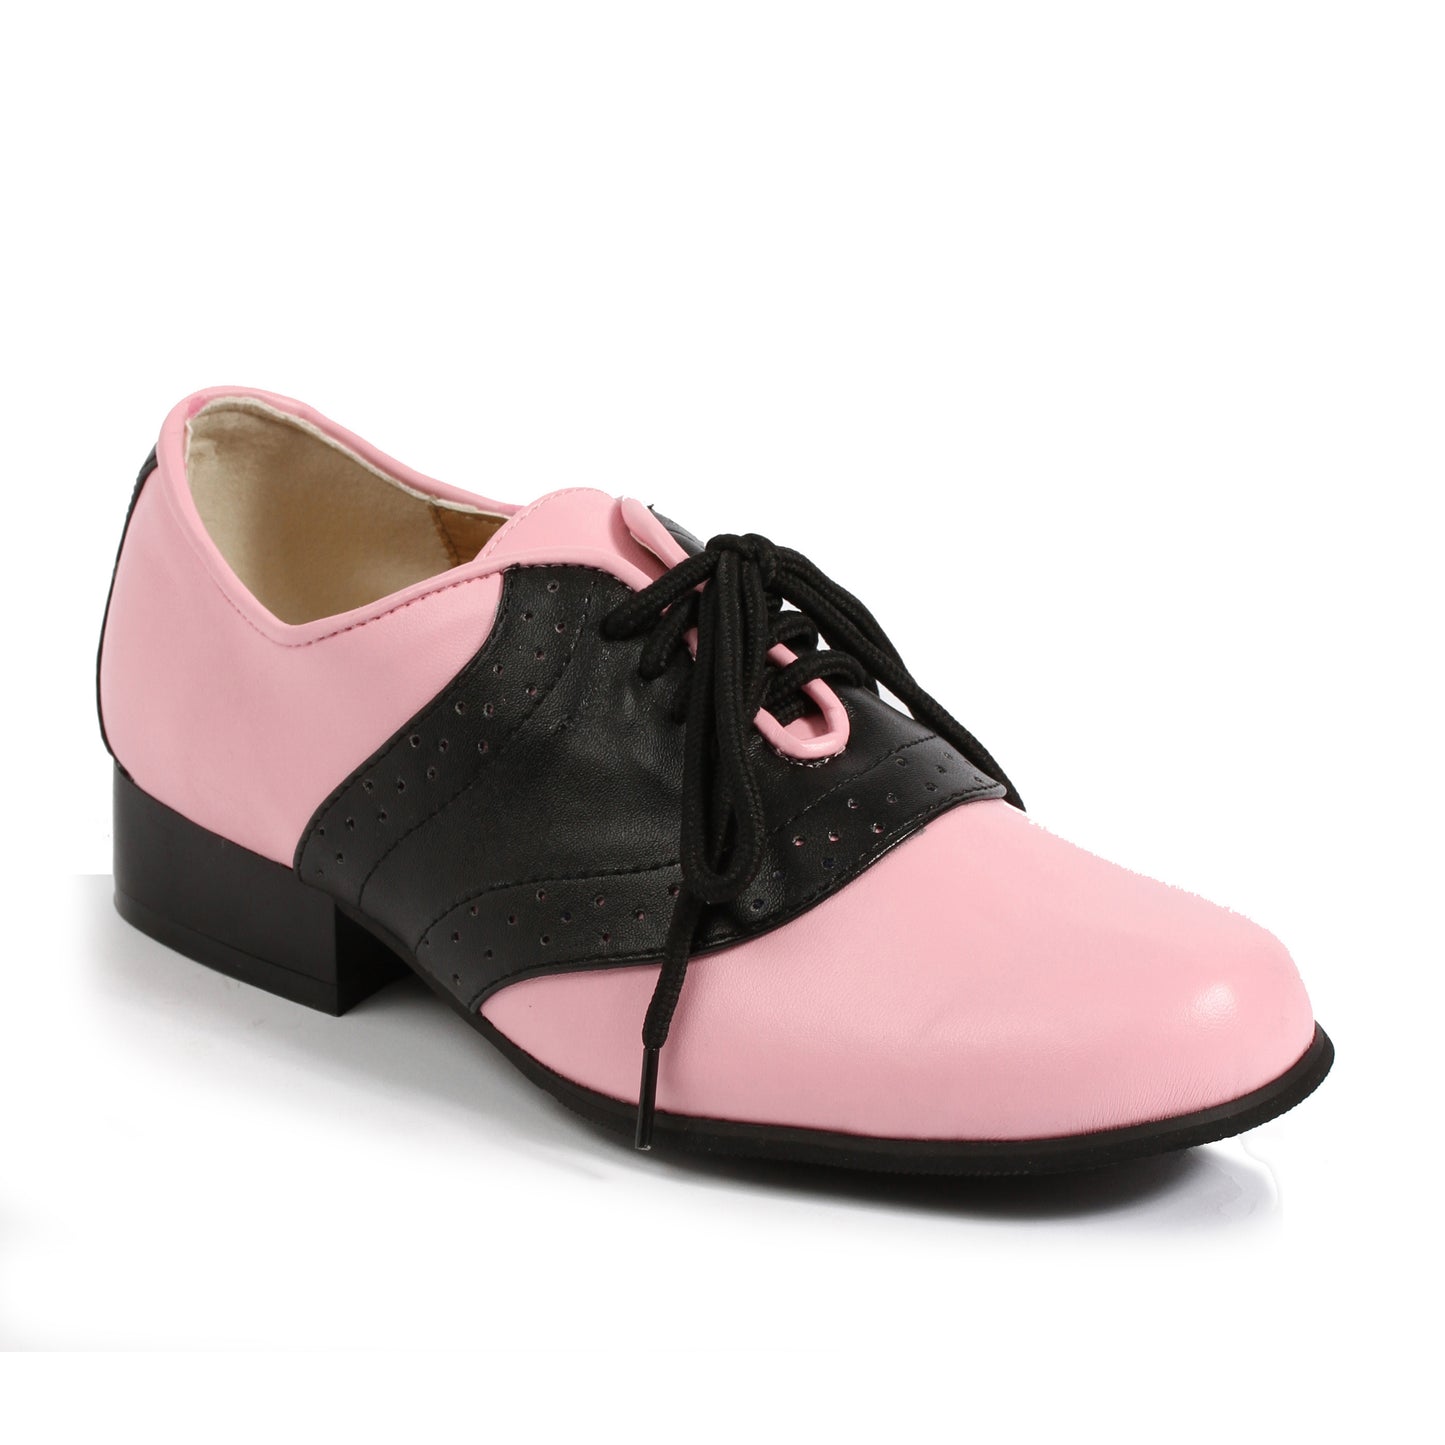 105-SADDLE Ellie Shoes 1" Heel Women Saddle Shoe. FLATS